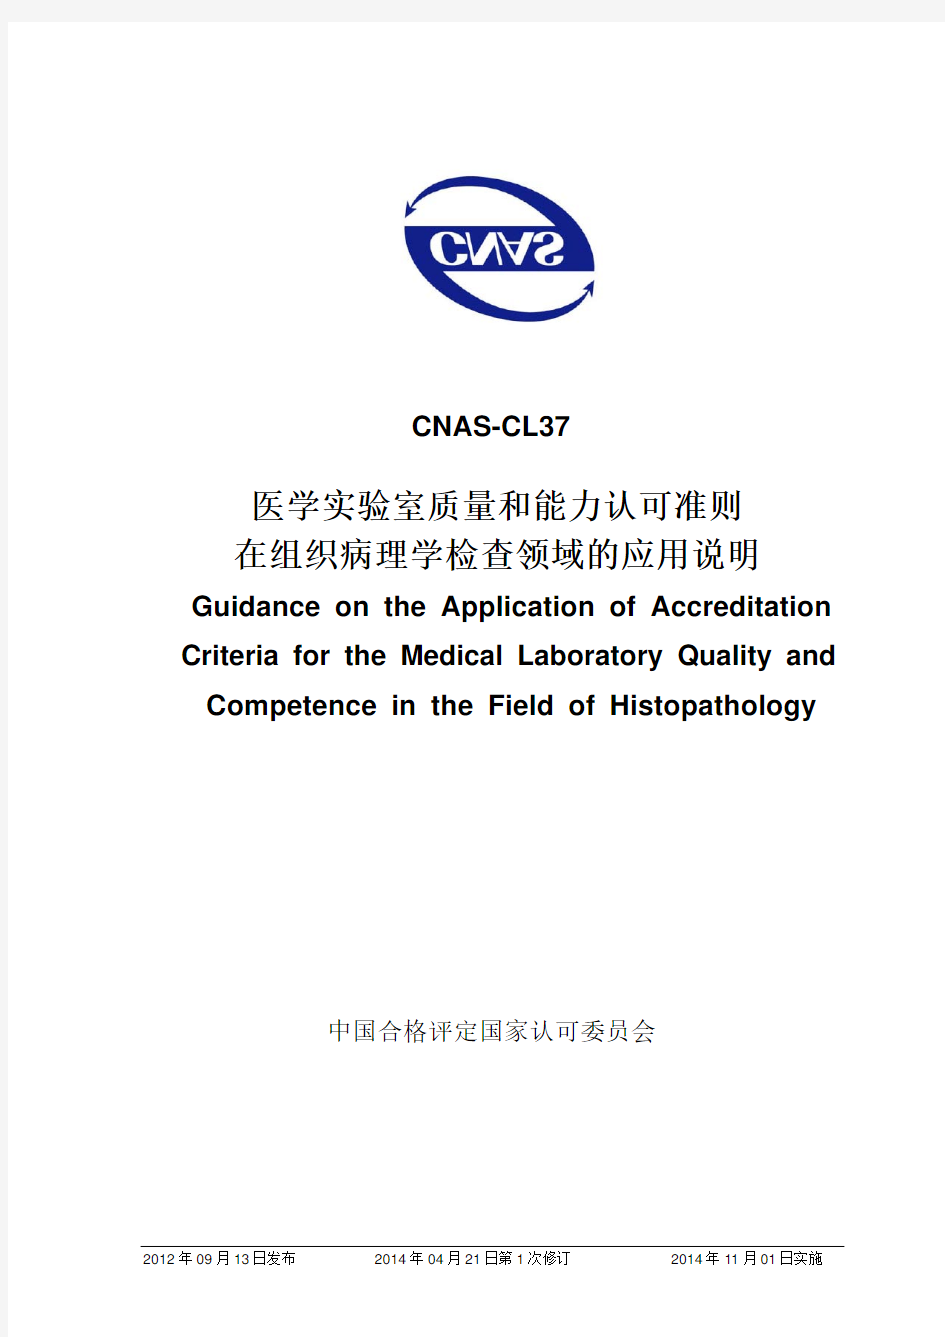 CNAS-CL37：2012《医学实验室质量和能力认可准则在组织病理学检查领域的应用说明》